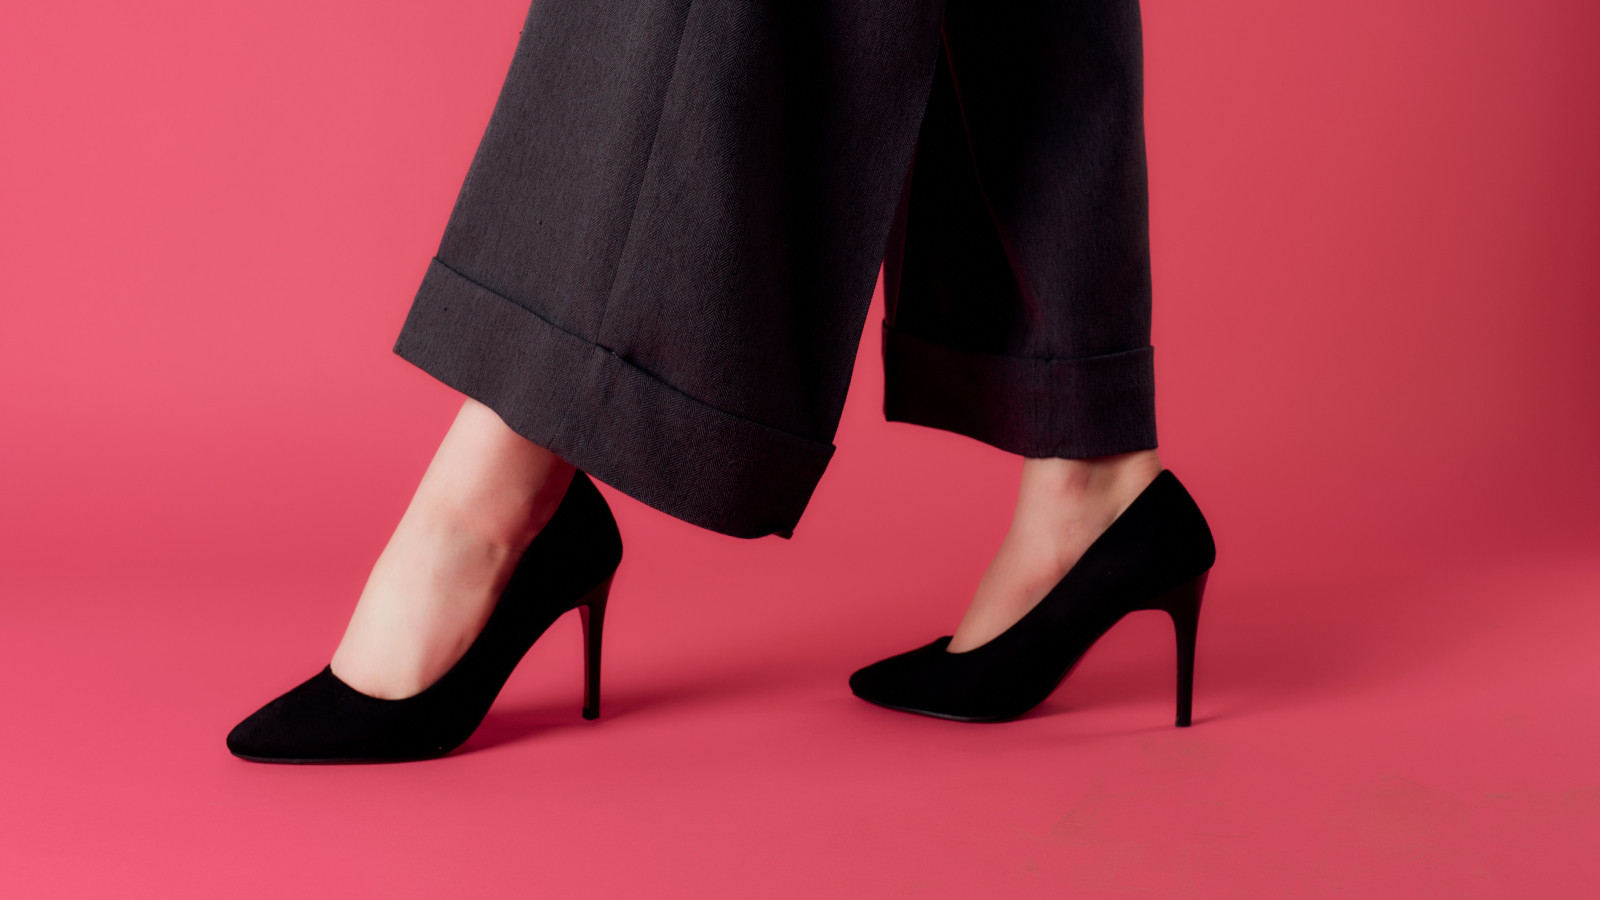 Kadınlar için doğru pantolon uzunlukları: Topuklu ve düz ayakkabılara göre model önerileri